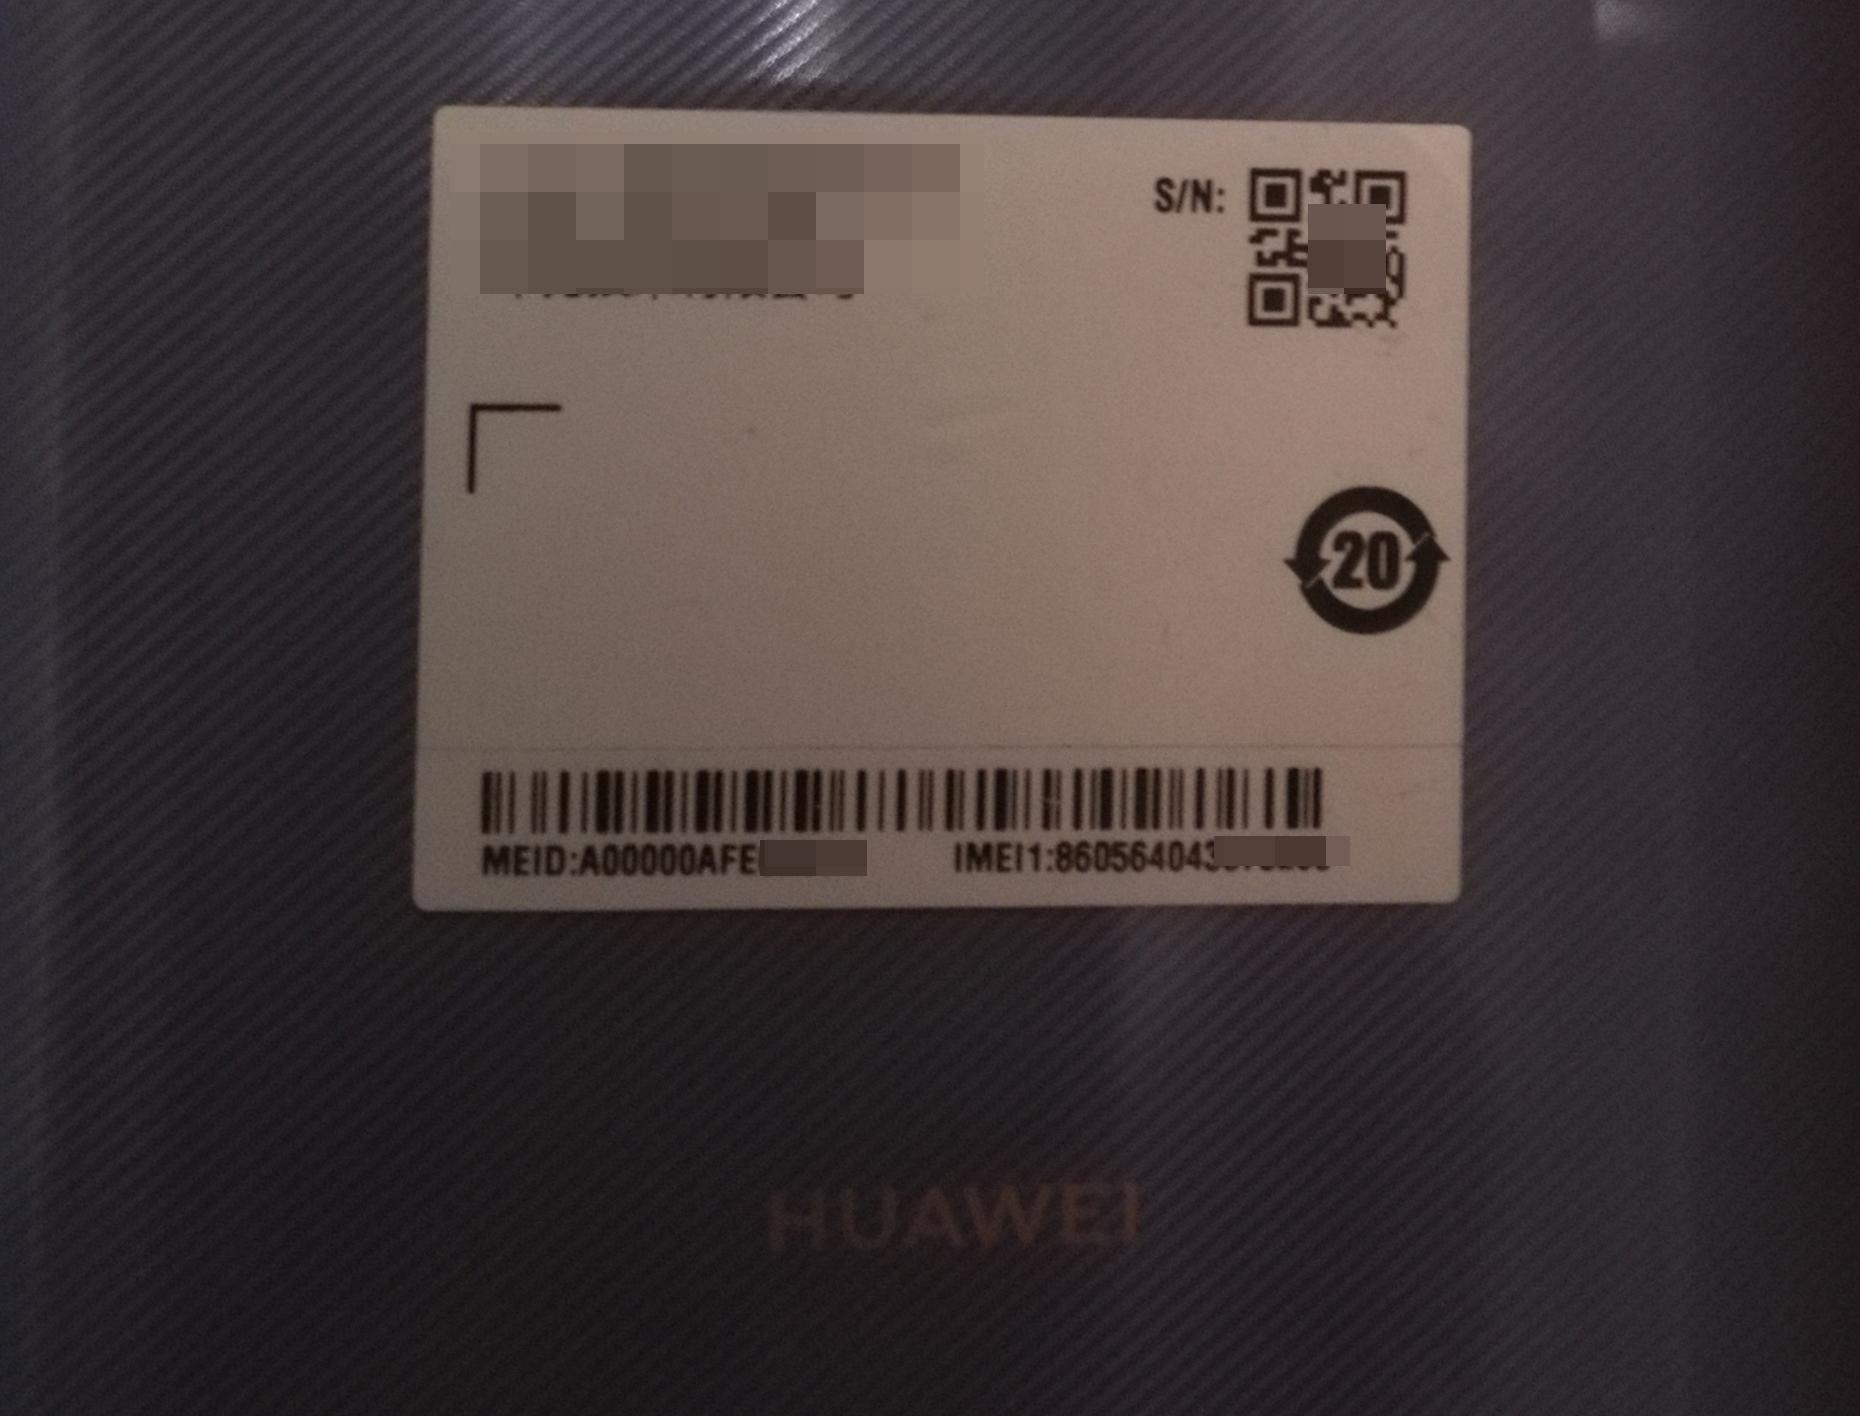 Как узнать IMEI, модель и серийный номер устройства Huawei - Huawei Devices